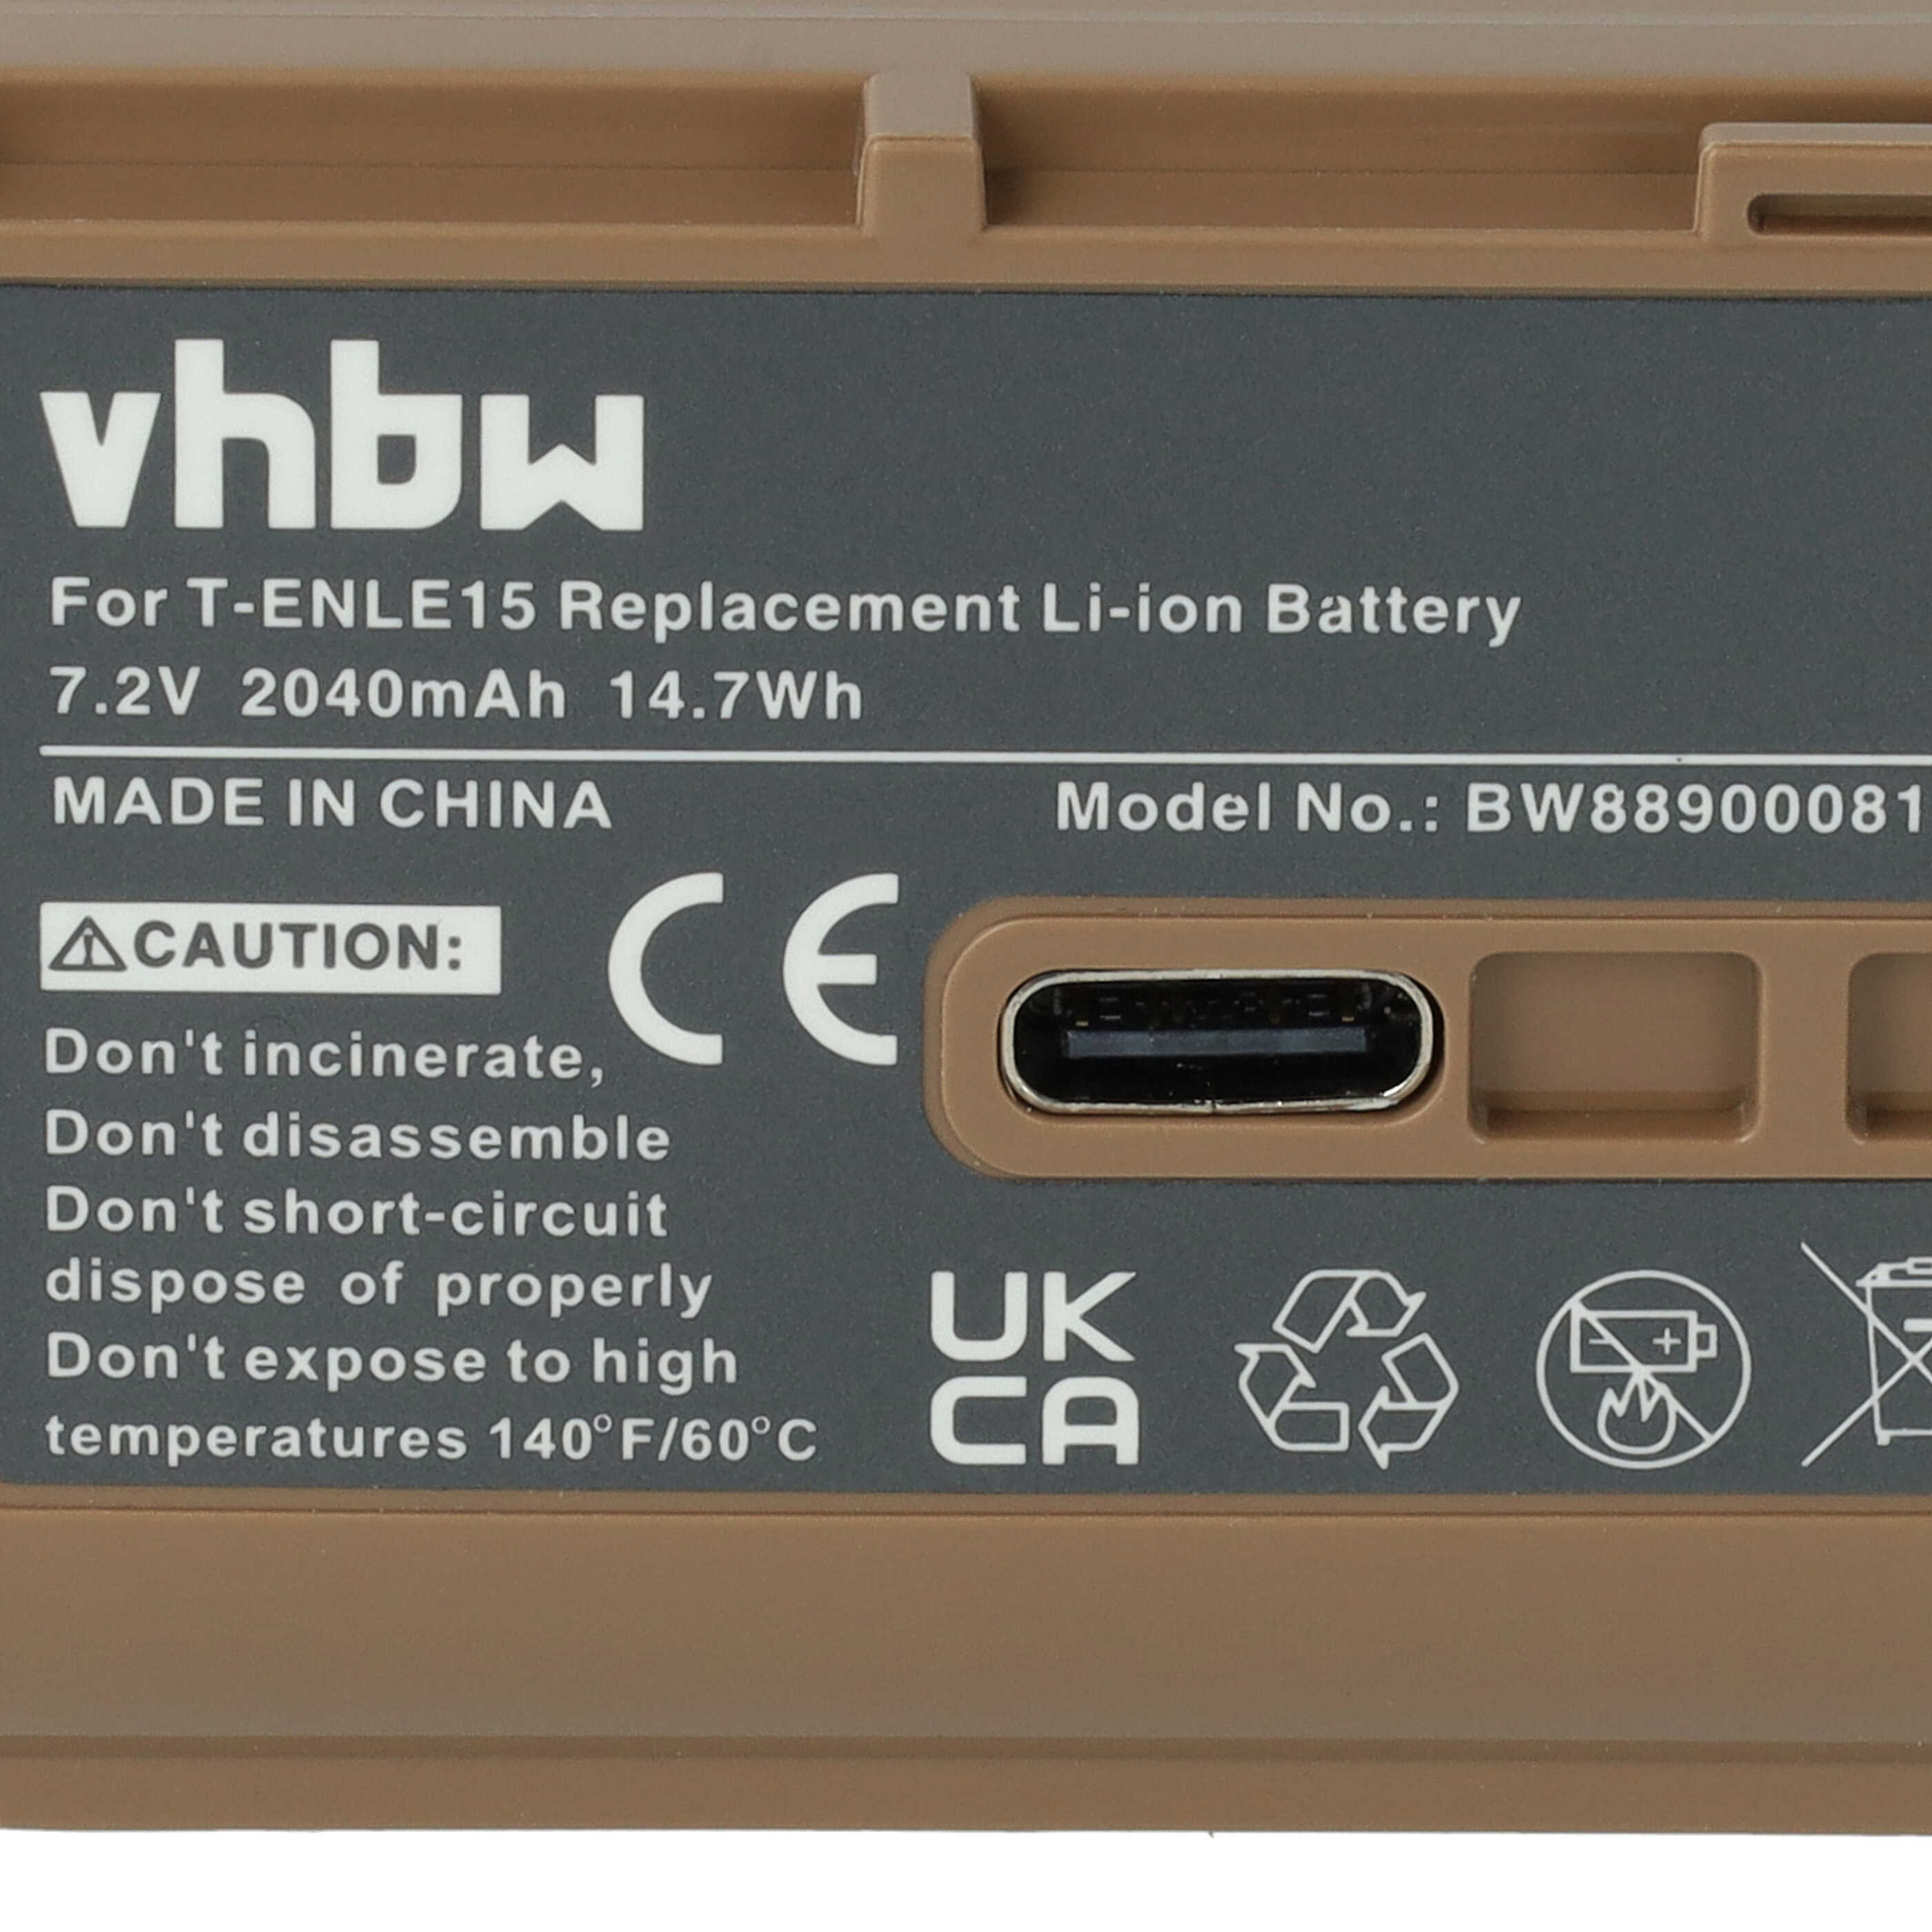 Batterie remplace Nikon EN-EL15, EN-EL15b, EN-EL15A pour appareil photo - 2040mAh 7,2V Li-ion - USB-C